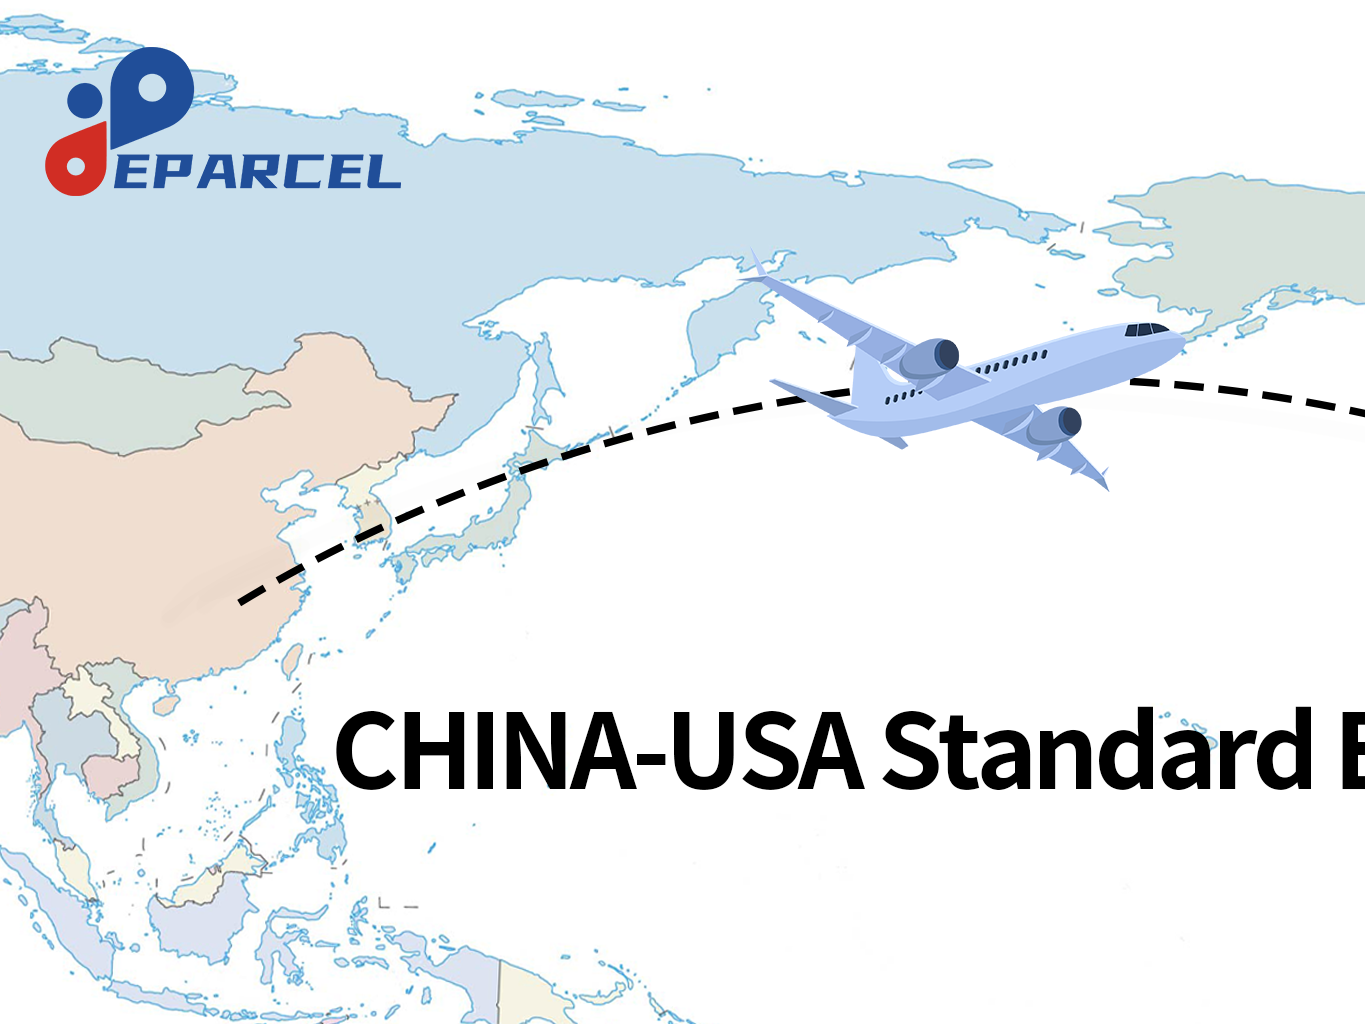 China-USA Standard Express